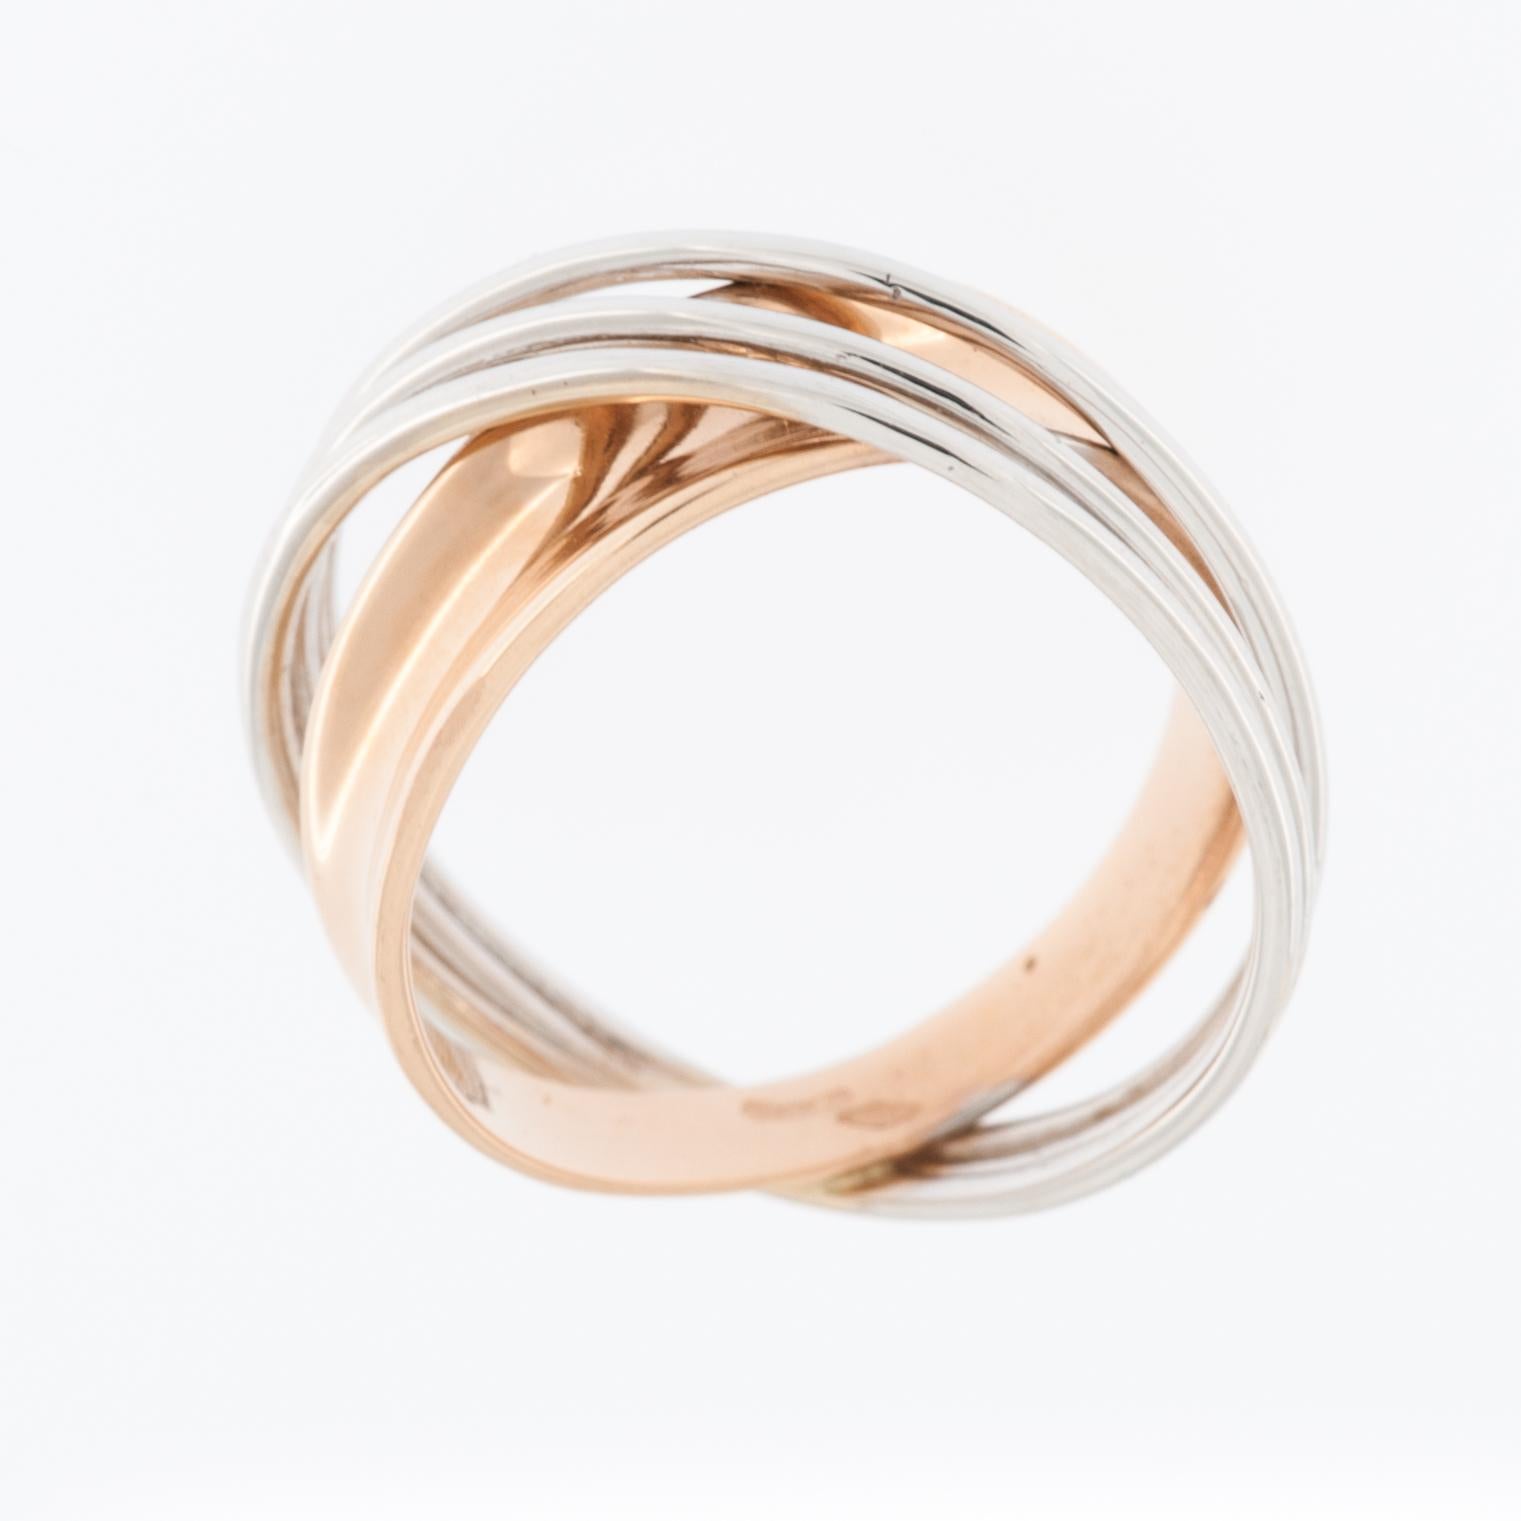 Der Italian Modern Ring aus 18-karätigem Weiß- und Roségold ist ein atemberaubendes Schmuckstück, das zeitgenössisches Design mit der zeitlosen Eleganz von Gold verbindet. 
Der Ring ist aus hochwertigem 18-karätigem Weiß- und Roségold gefertigt.